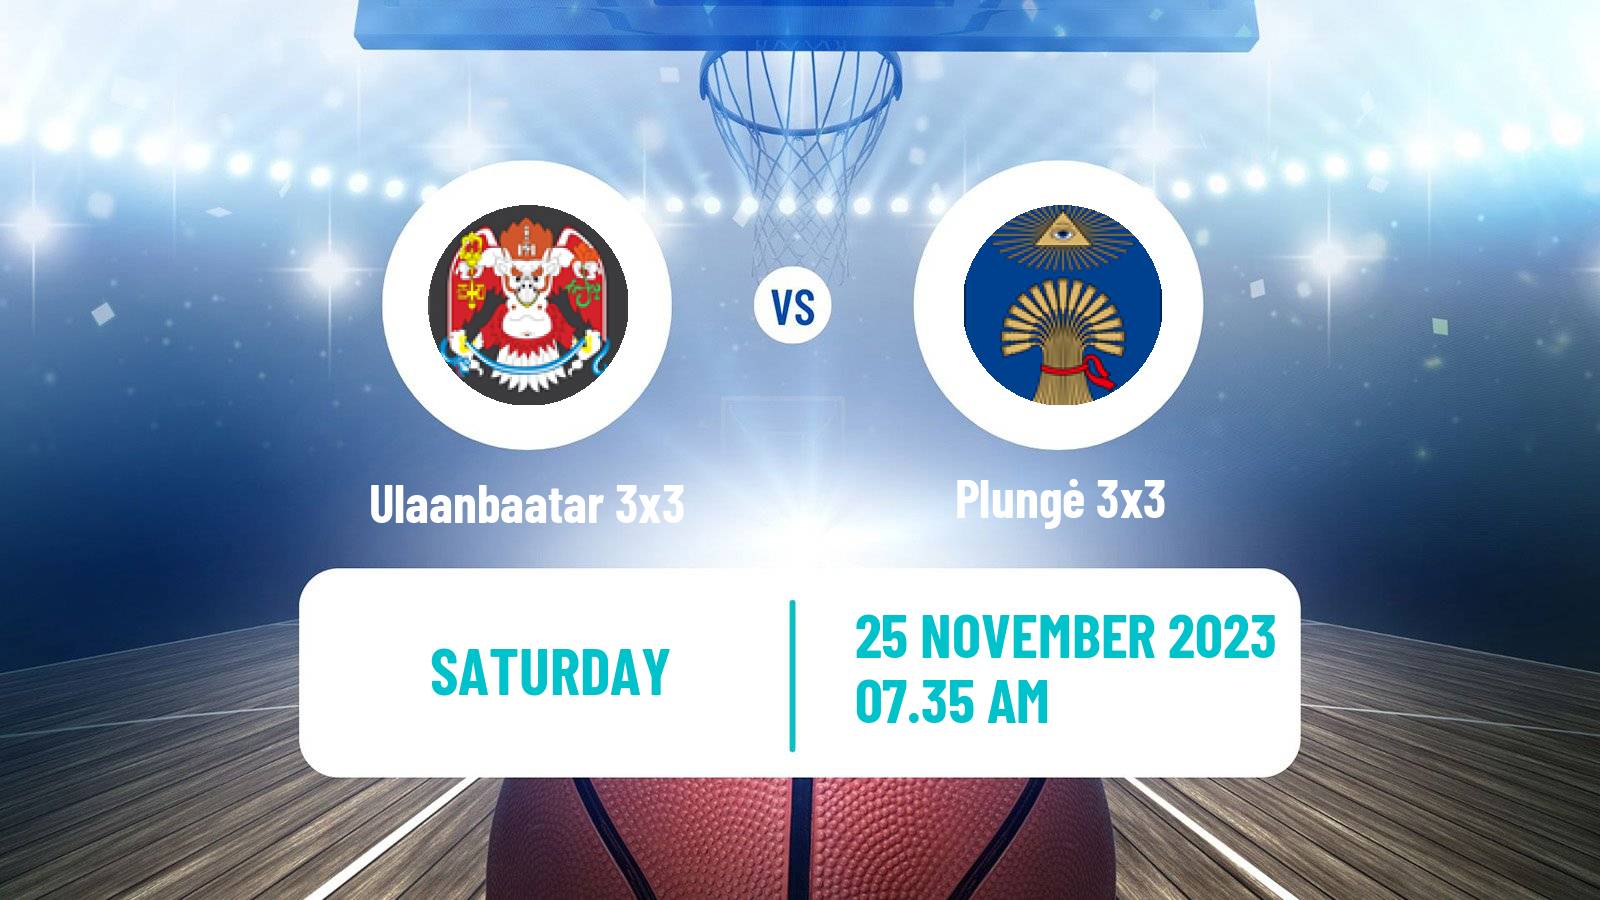 Basketball World Tour Hong Kong 3x3 Ulaanbaatar 3x3 - Plungė 3x3